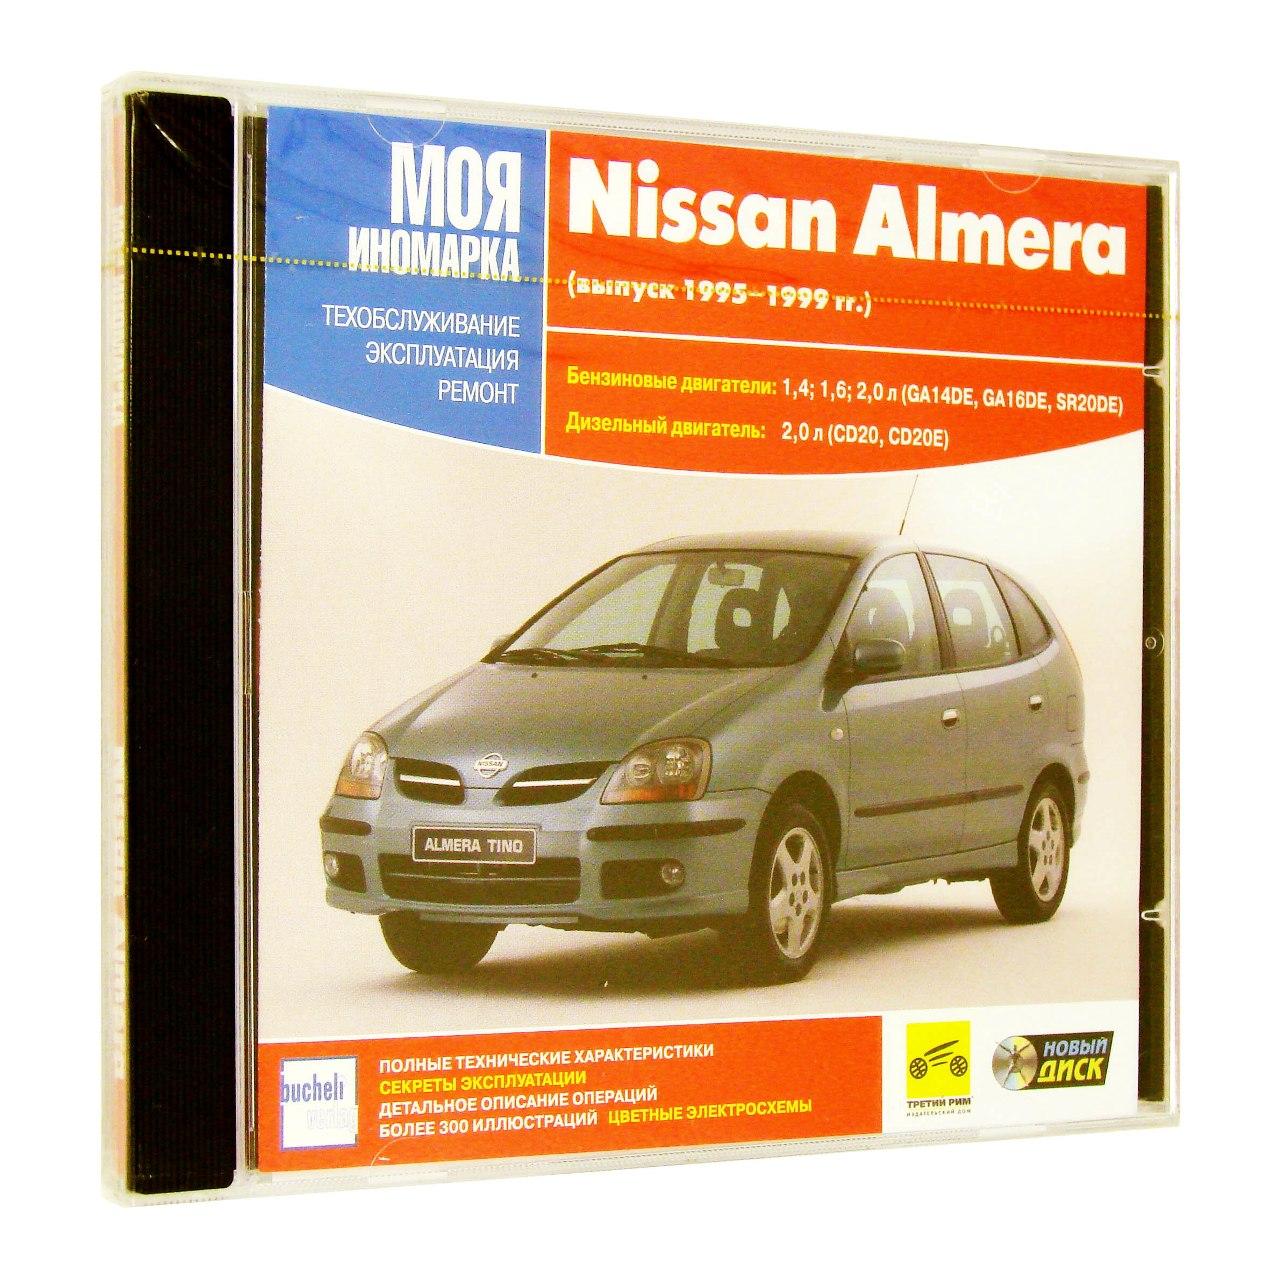 Компьютерный компакт-диск Nissan Almera. ’Моя иномарка’. (ПК), фирма "Новый диск", 1CD